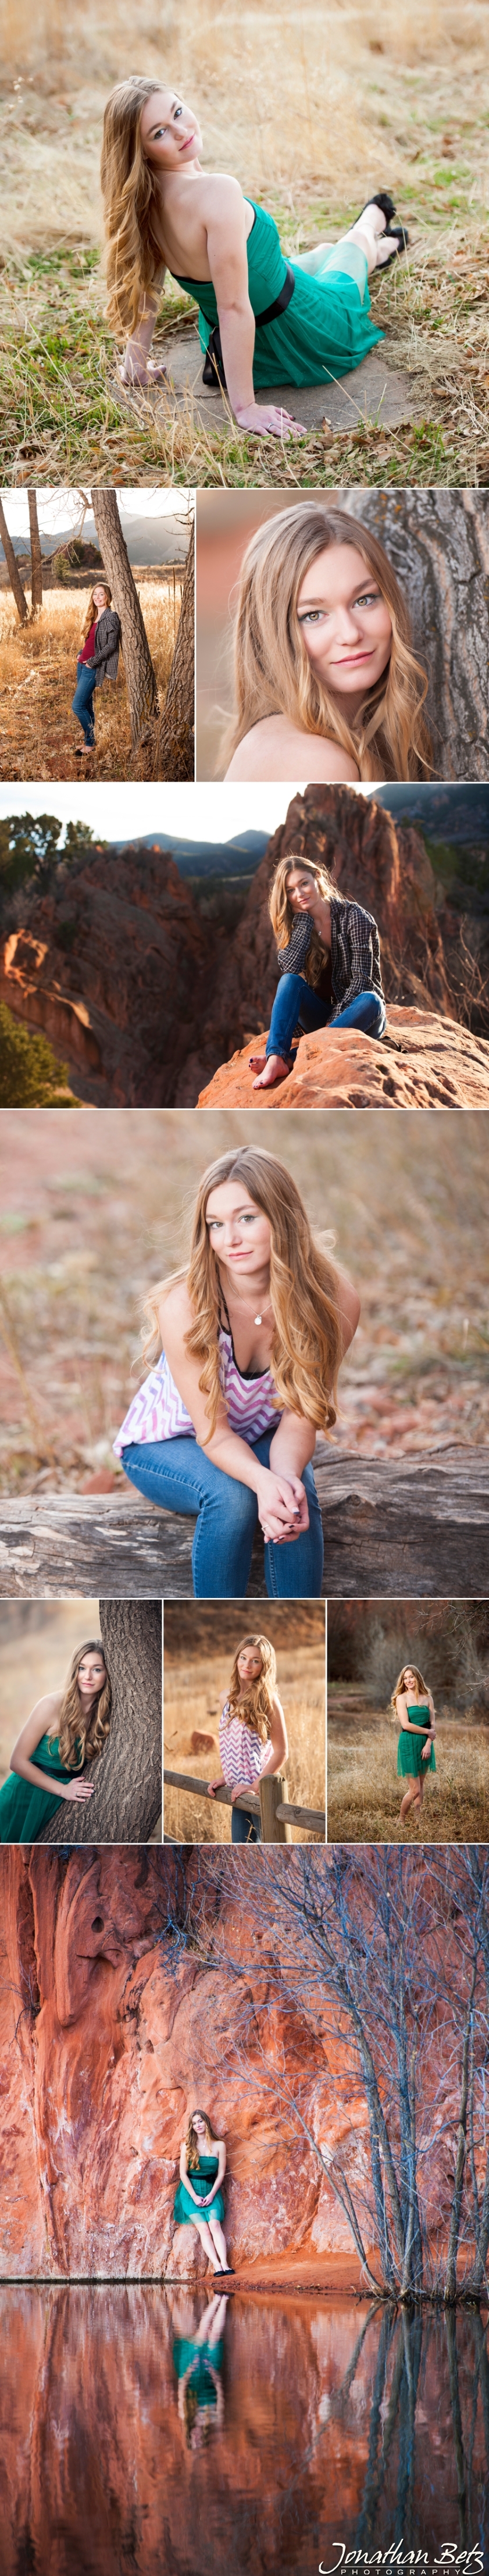 Colorado Springs High School Senior Portraits Photographer